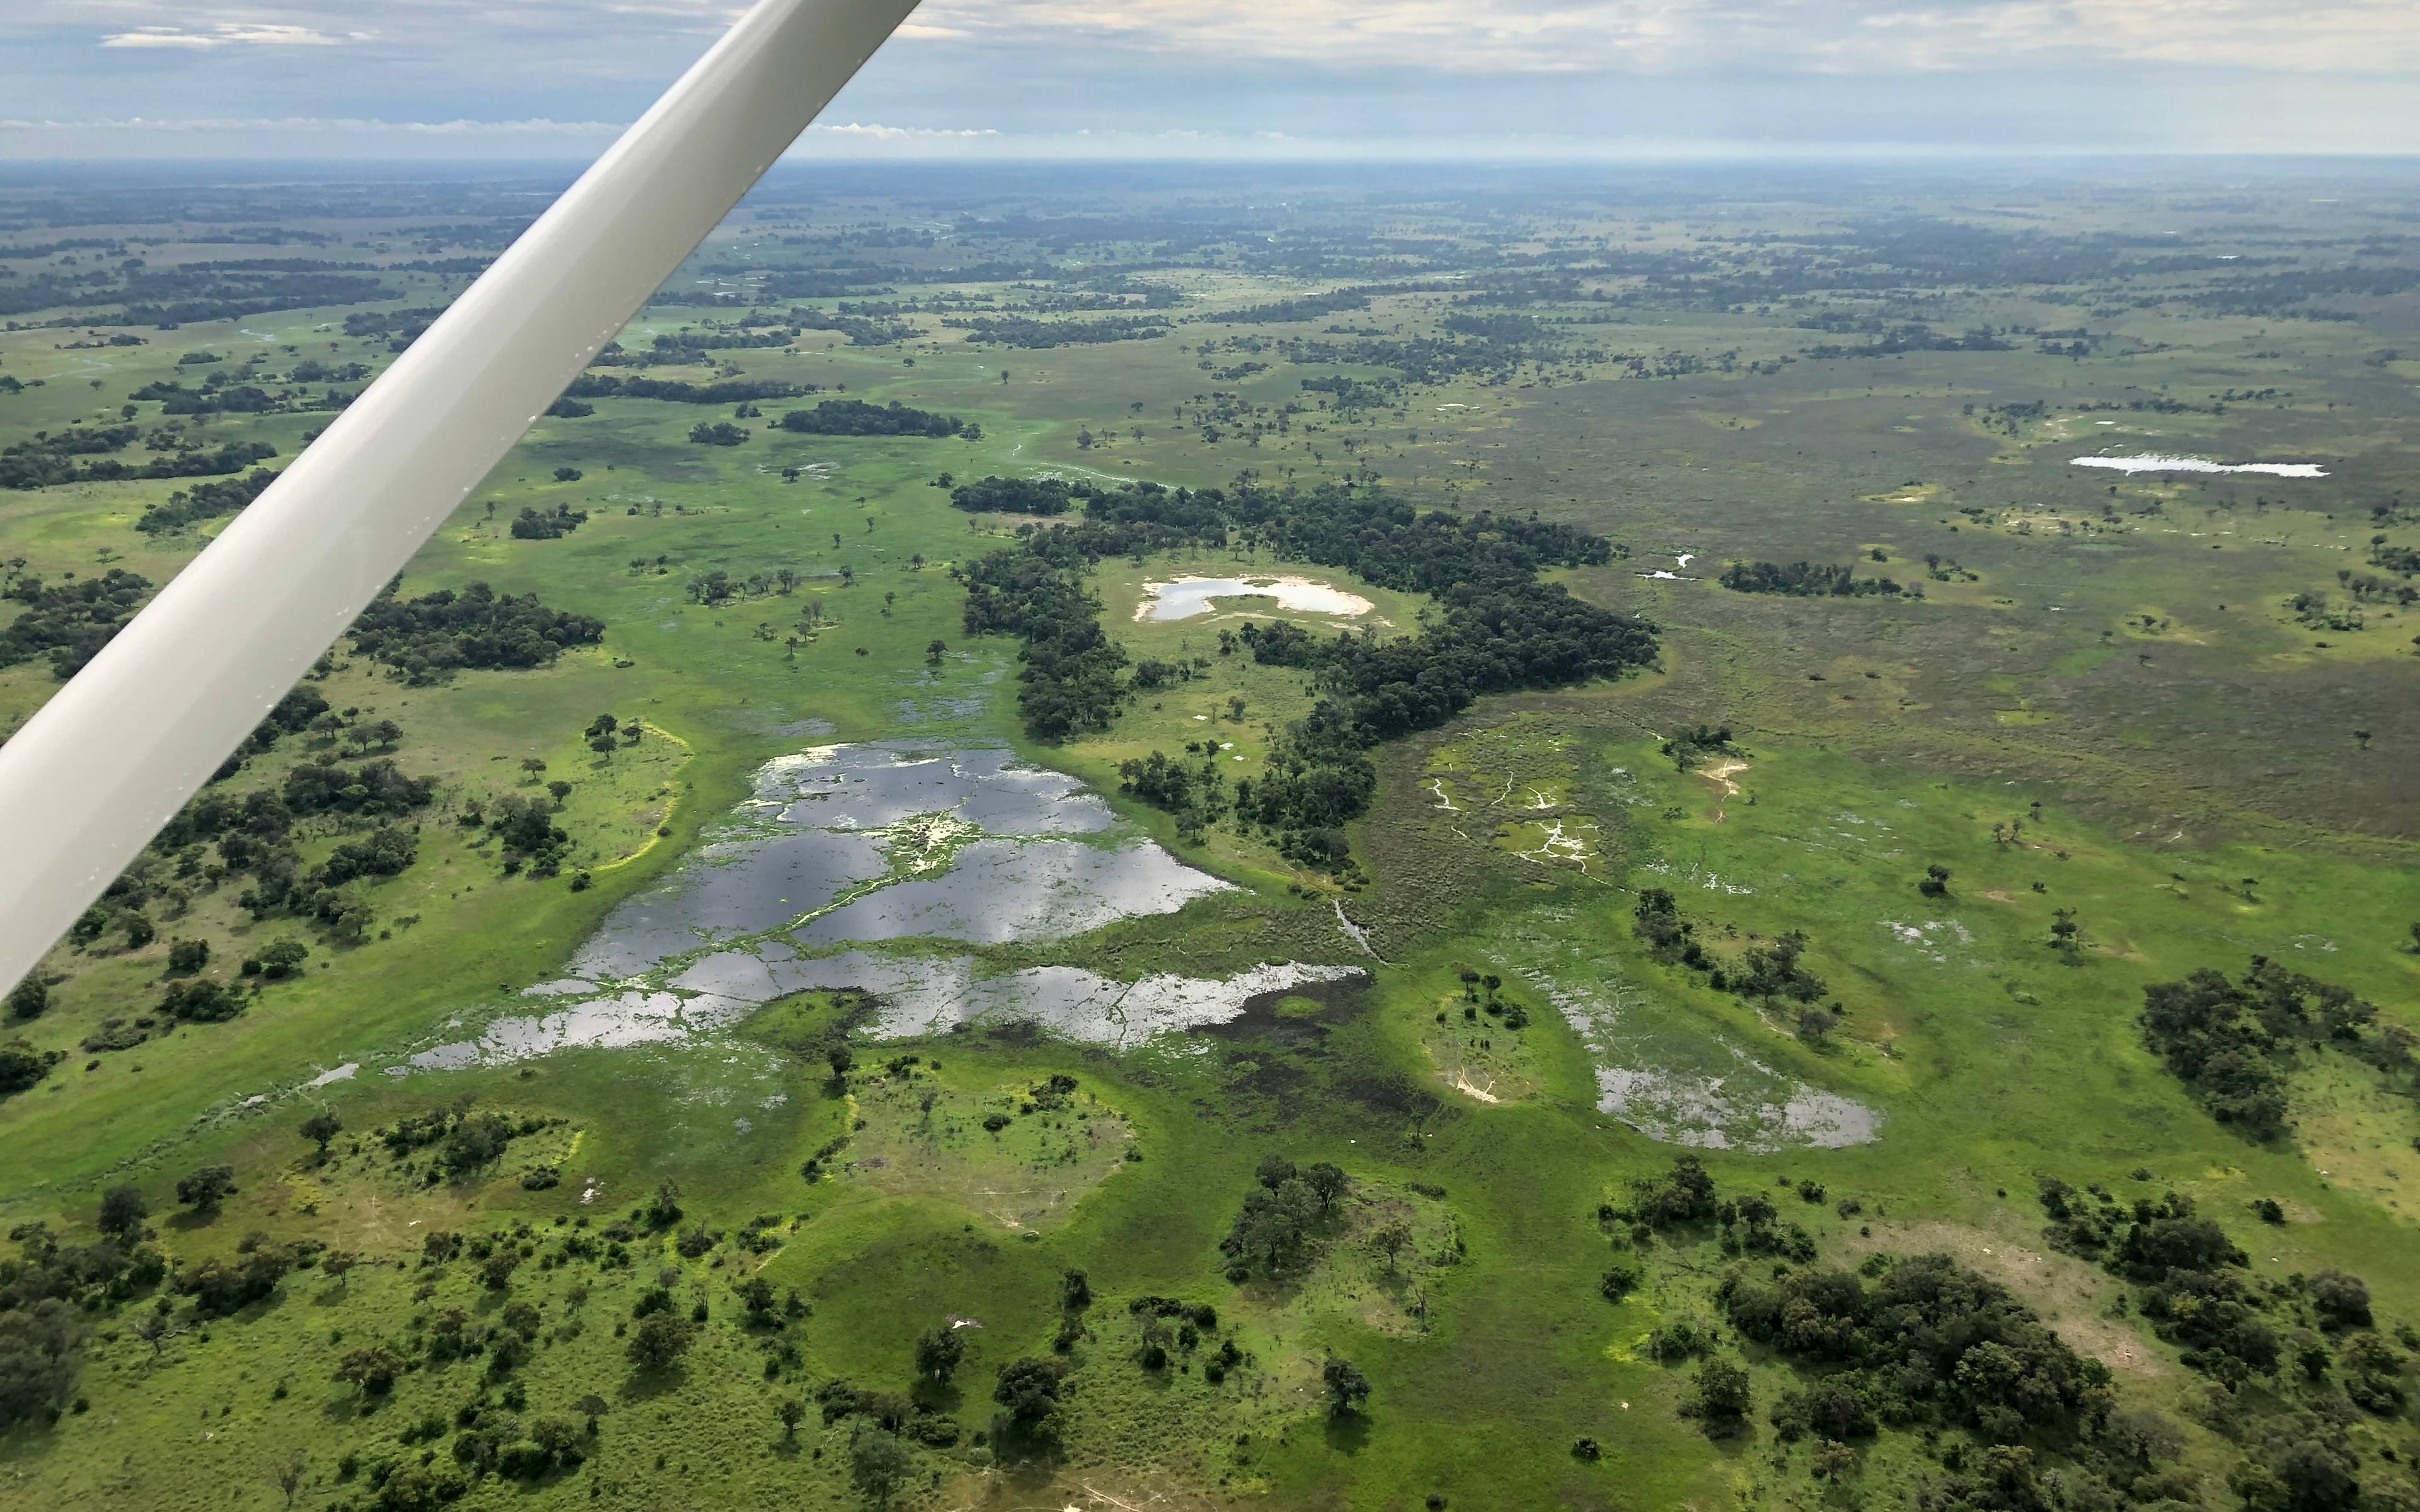 De Maun al delta del Okavango